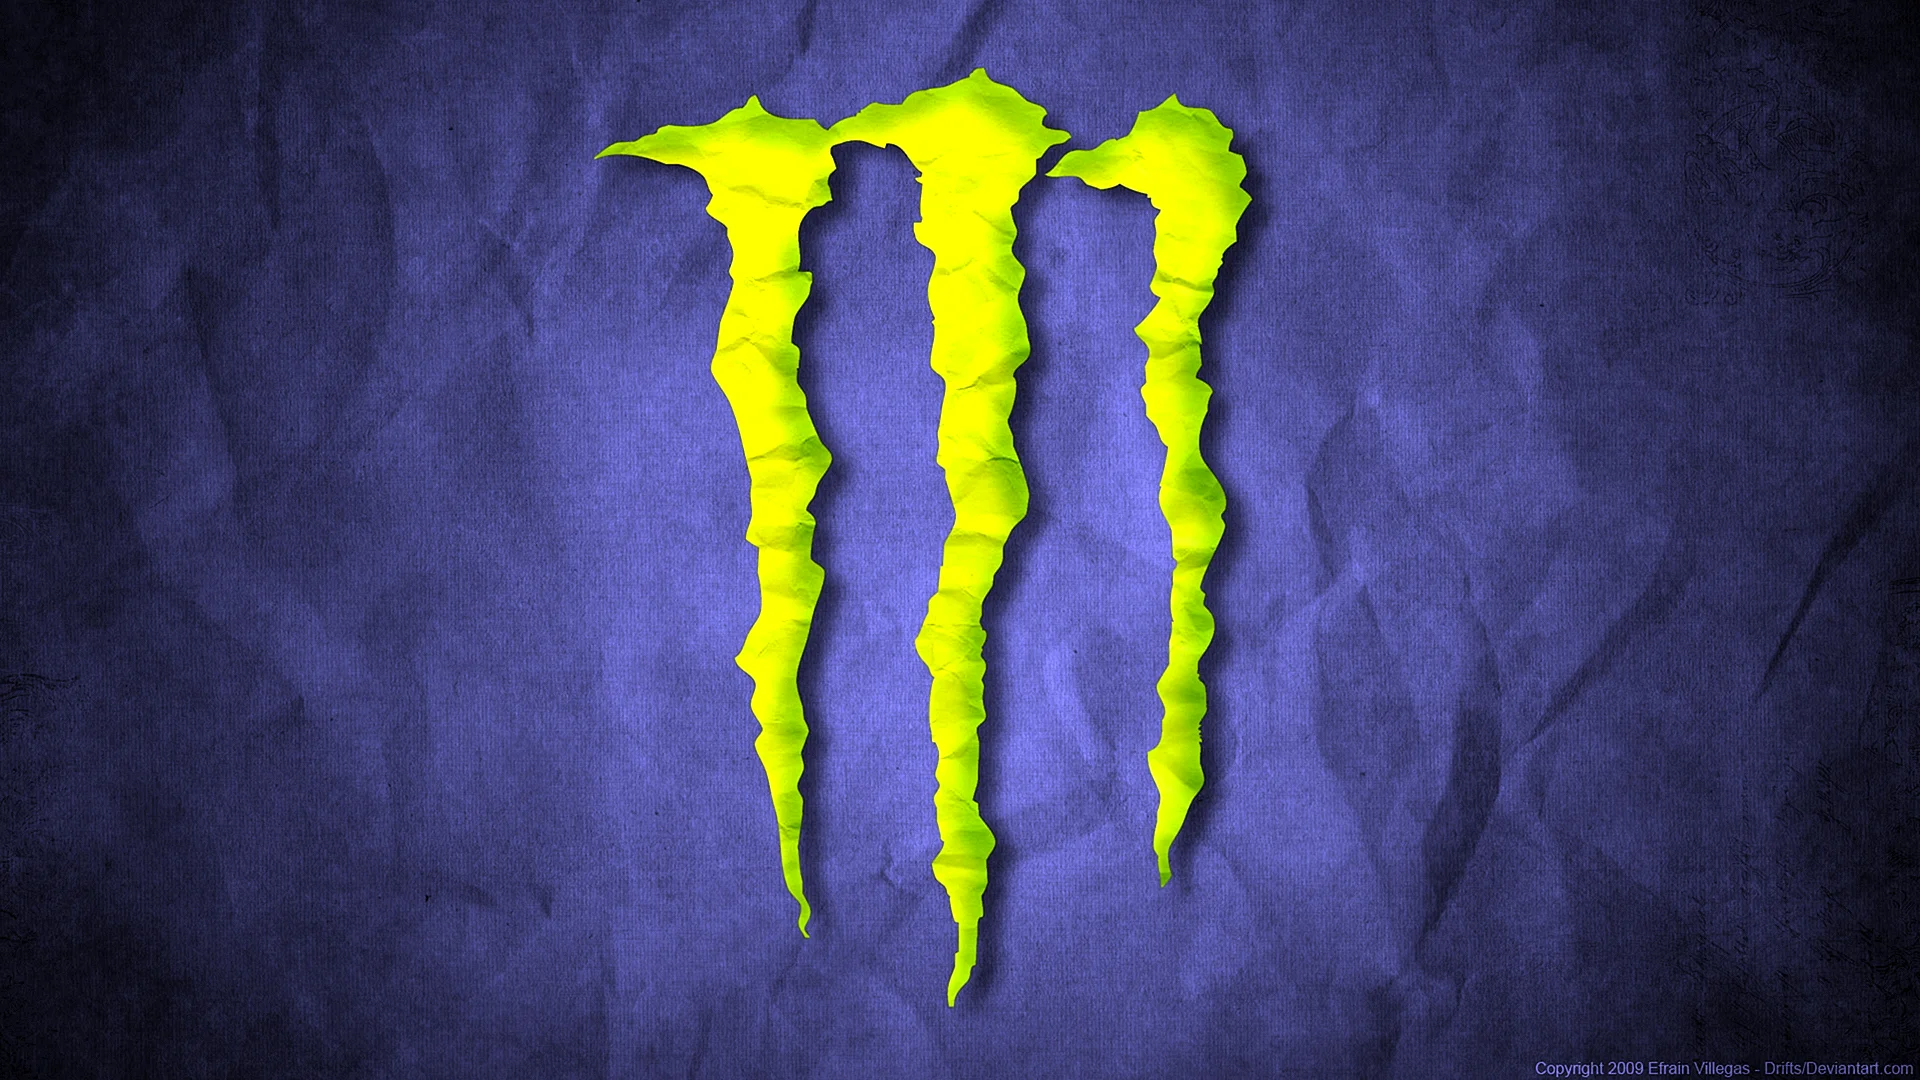 Monster Energy Wallpaper